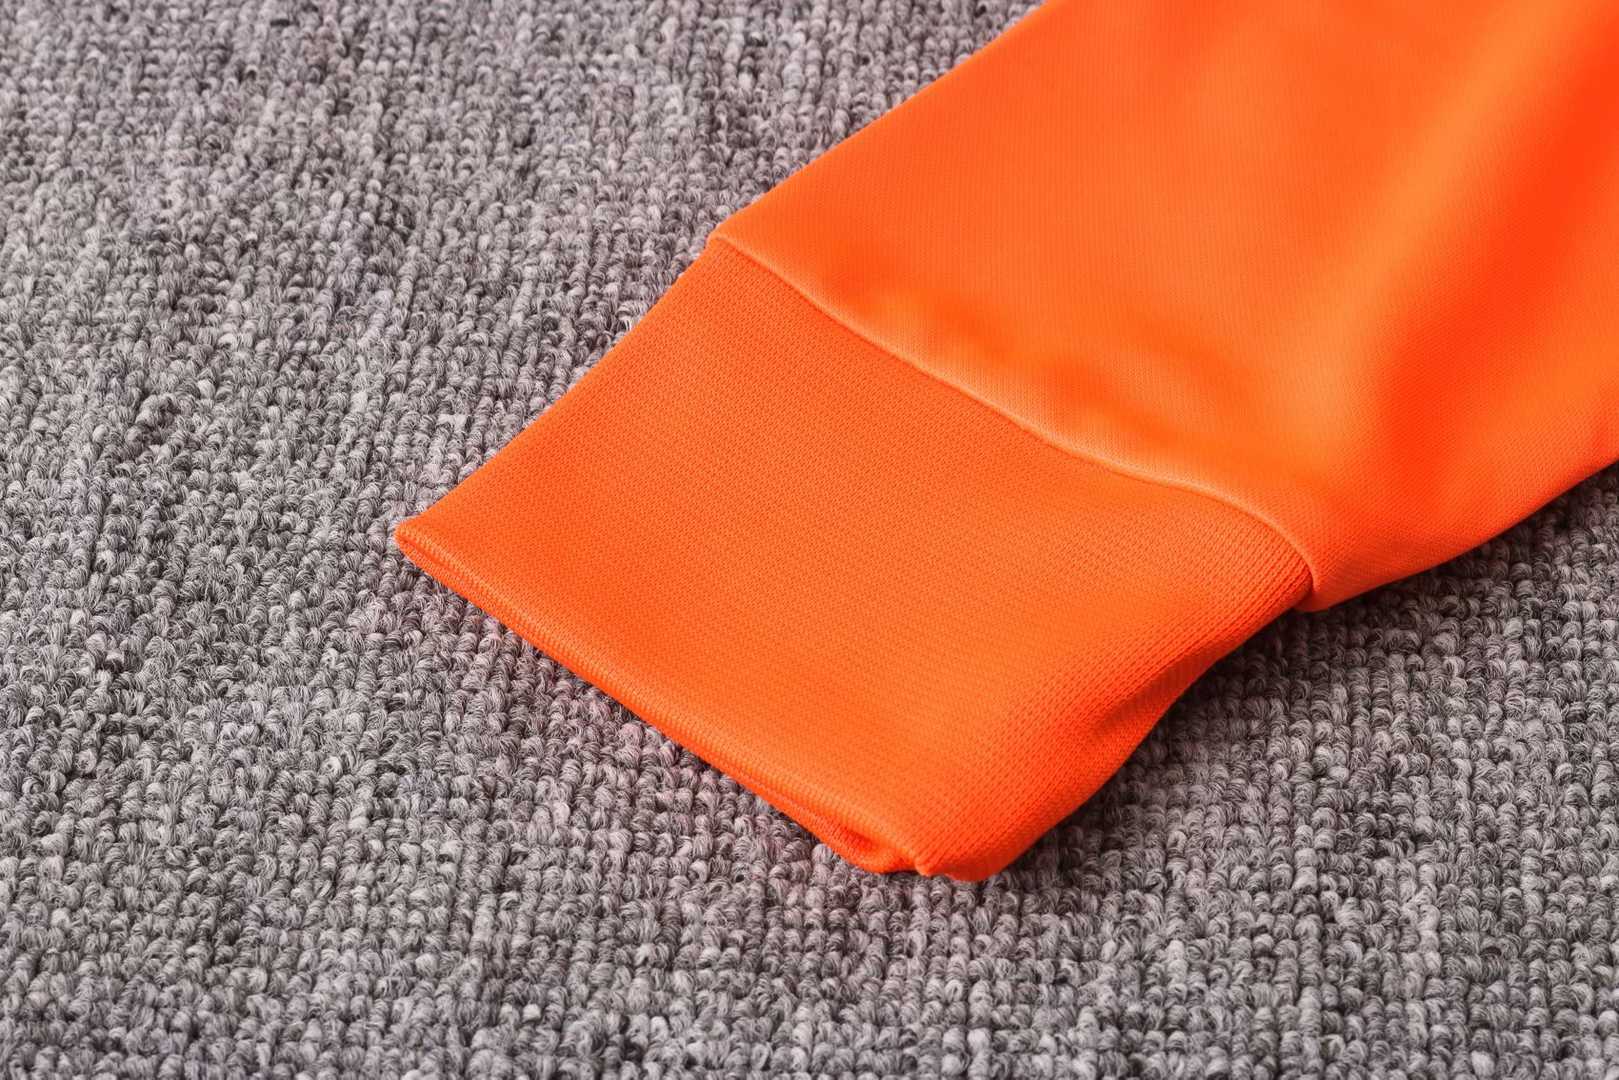 2020/21 Netherlands Orange Mens Soccer Training Suit(Jacket + Pants)